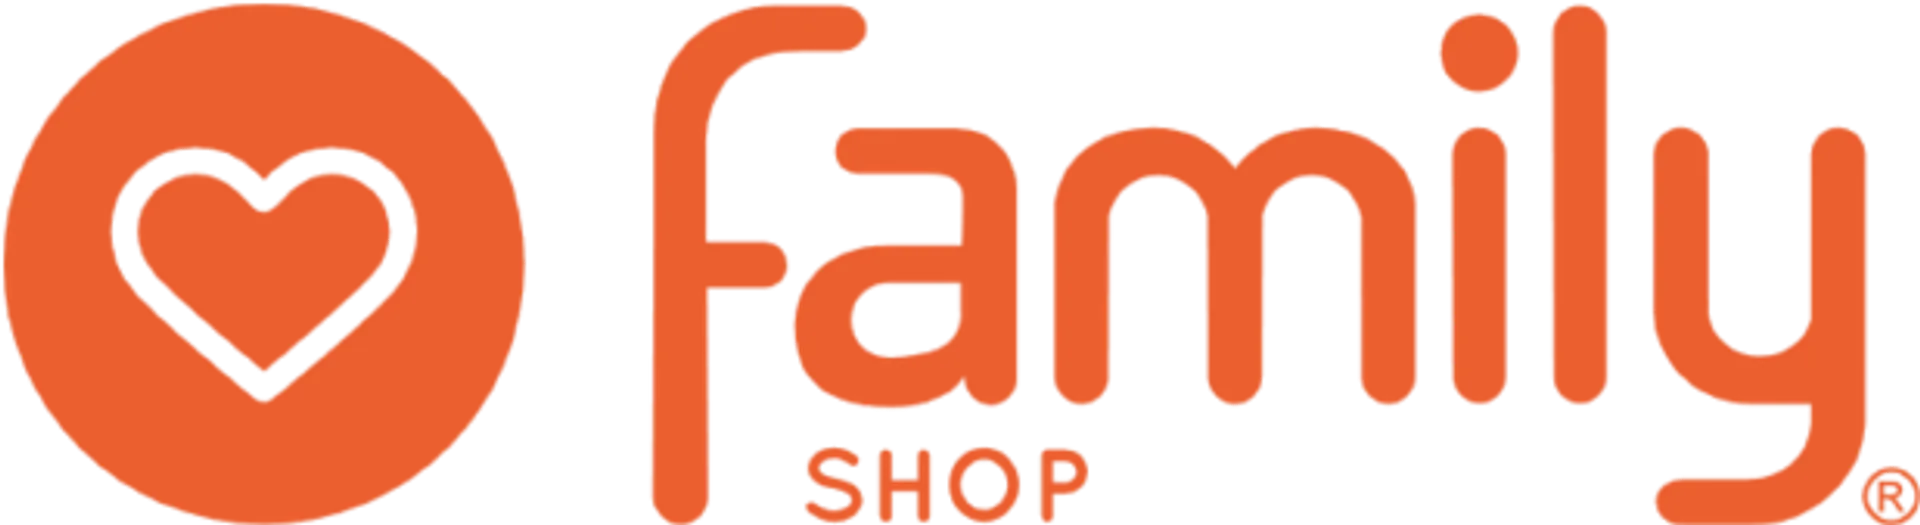 FAMILY SHOP logo